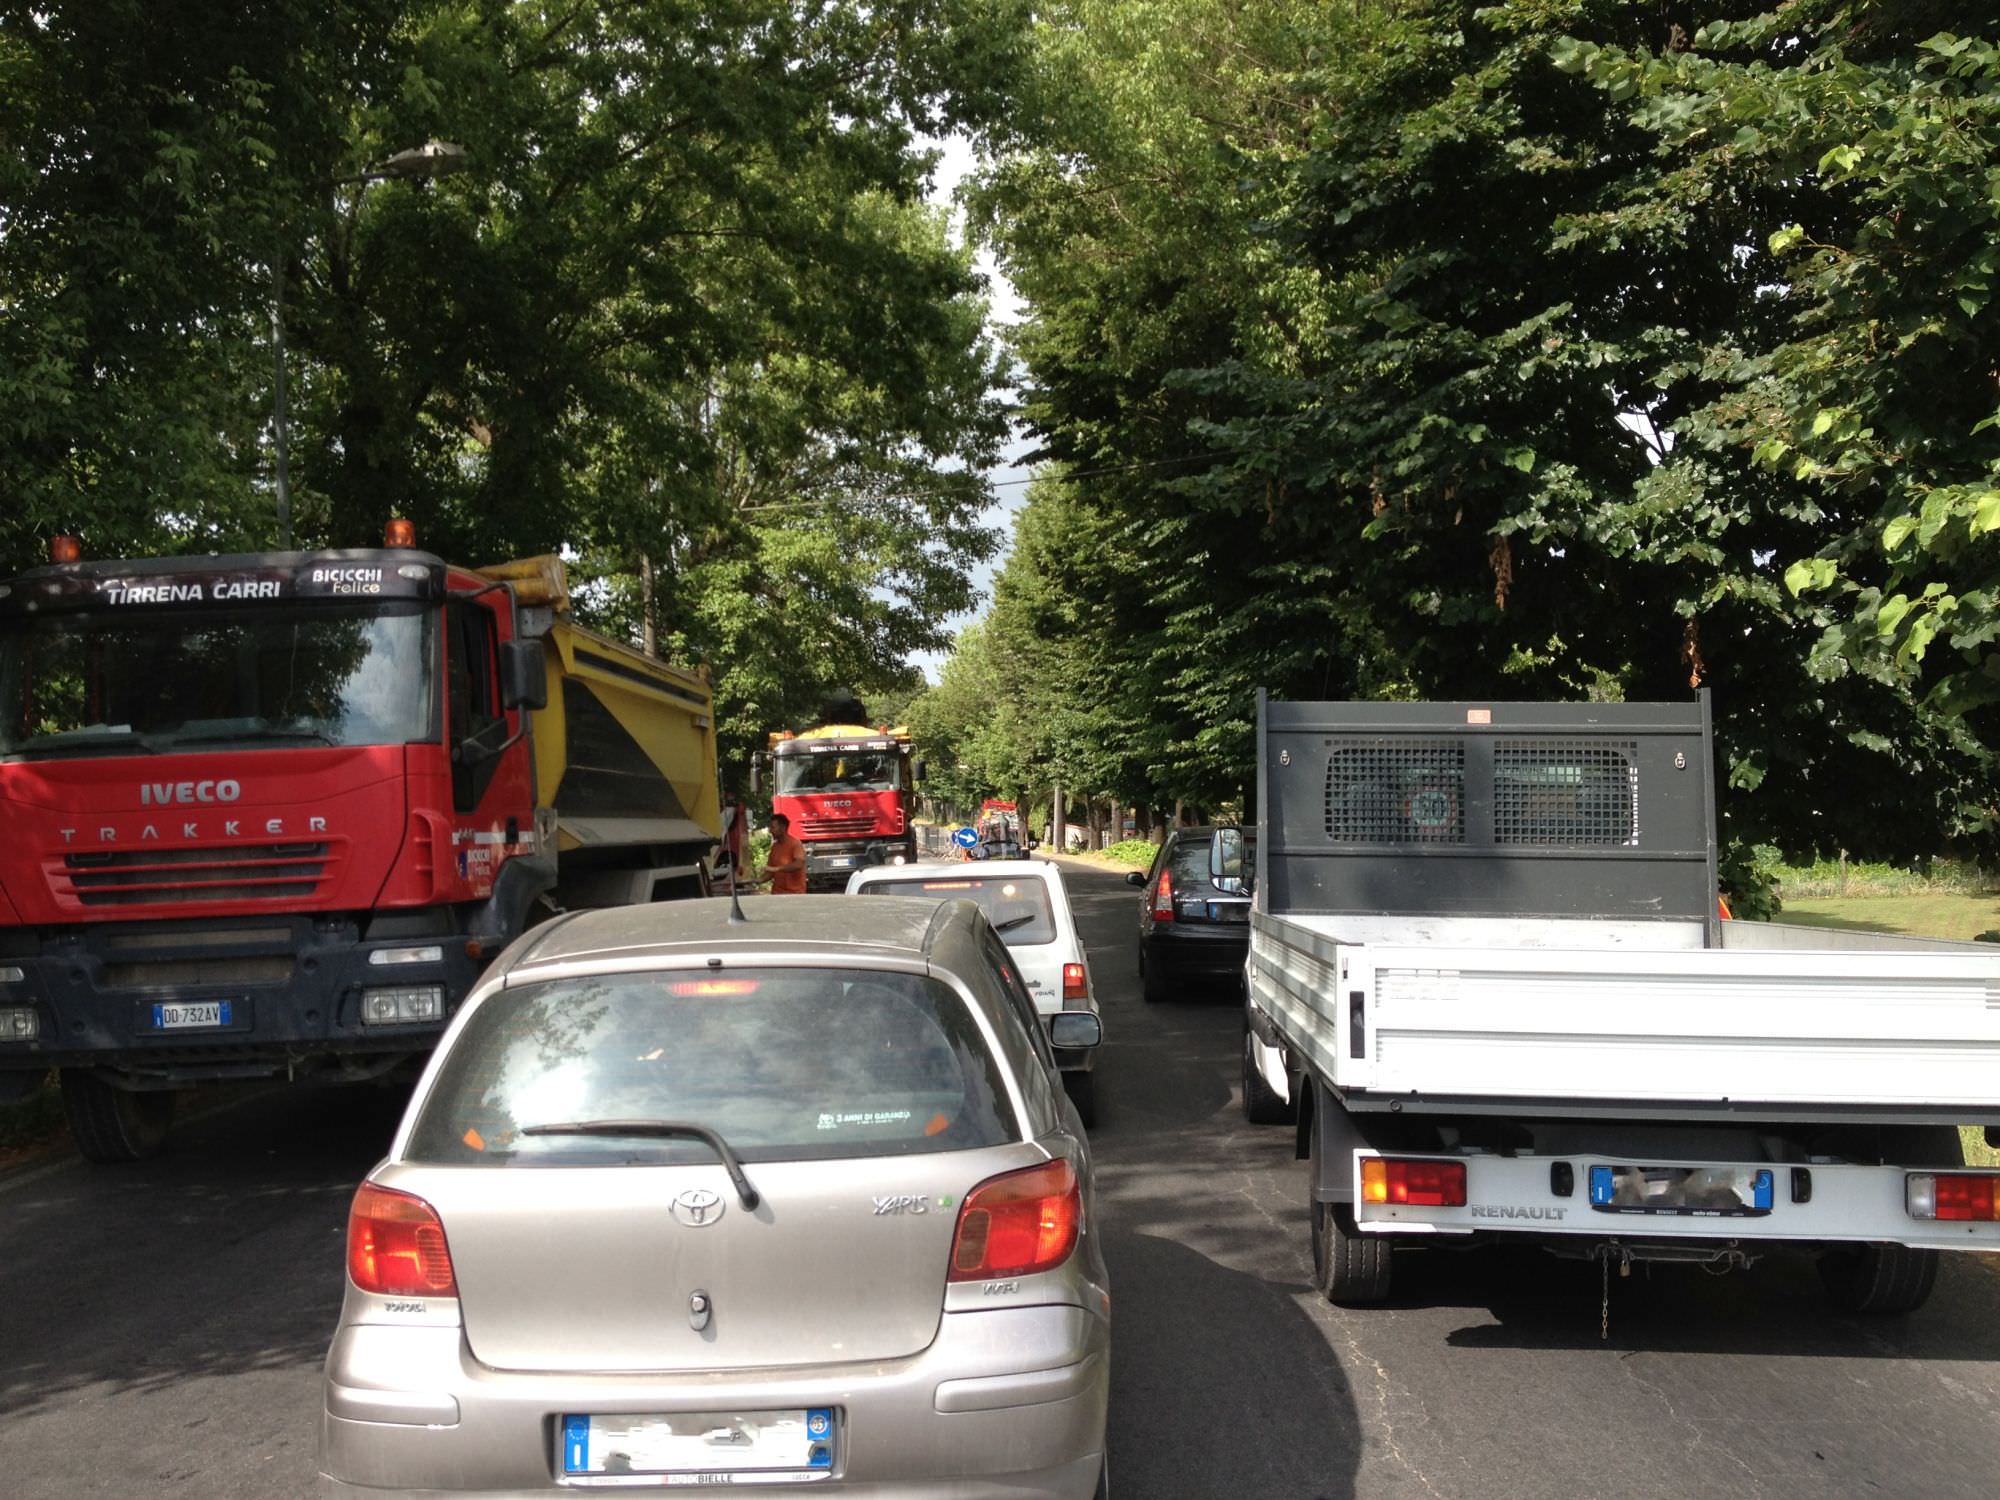 Code, incidenti, deviazioni: tutto il traffico in Toscana in un click